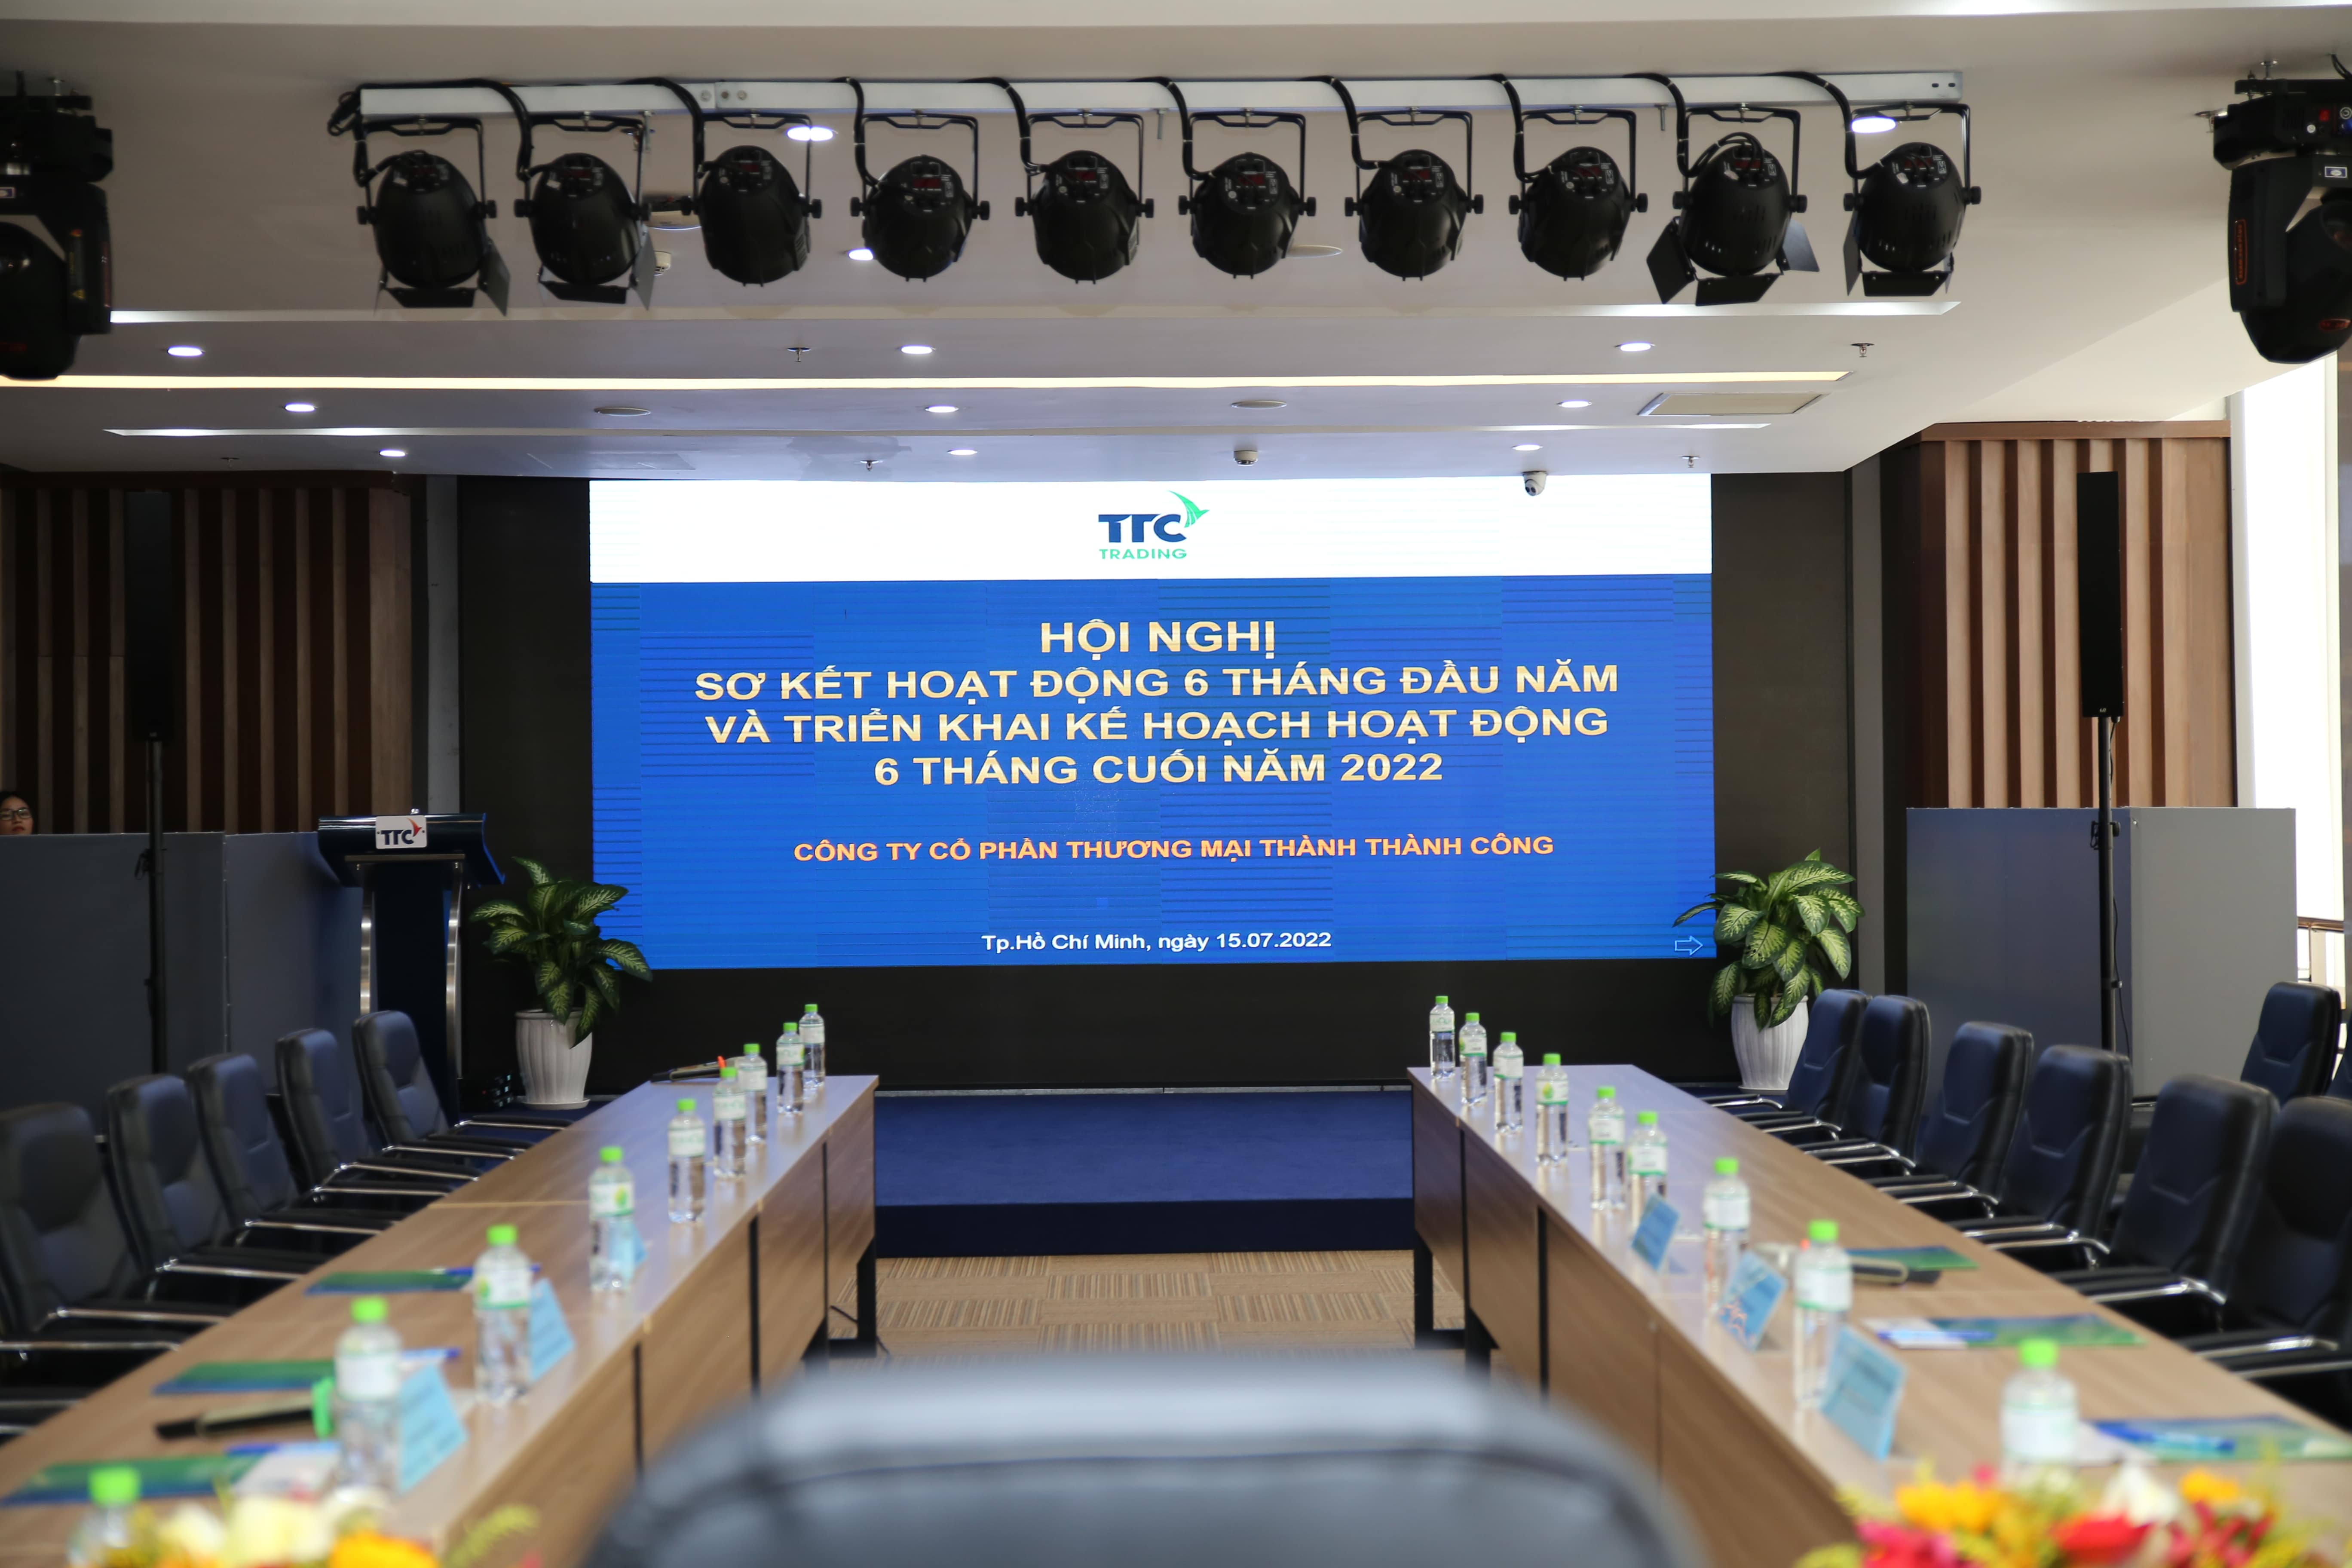 TTC TRADING tổ chức Hội nghị Sơ kết hoạt động 6 tháng đầu năm và Triển khai kế hoạch hoạt động 6 tháng cuối năm 2022